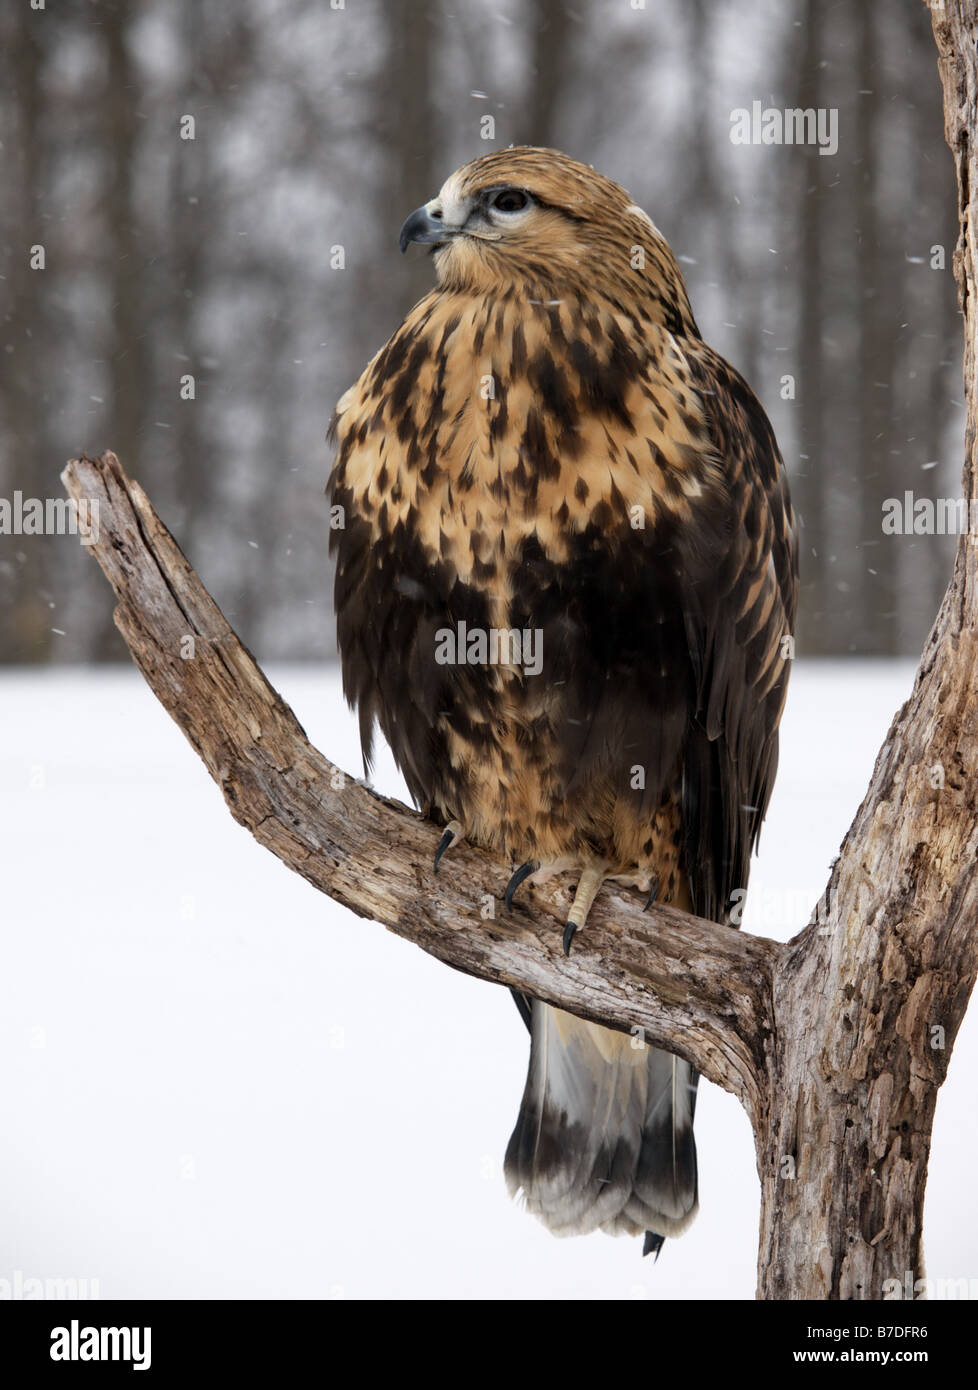 Corpo pieno colpo di sgrossatura di zampe (Hawk Falconiformes) appollaiato su un arido ramo di albero in una scena d'inverno. Foto Stock